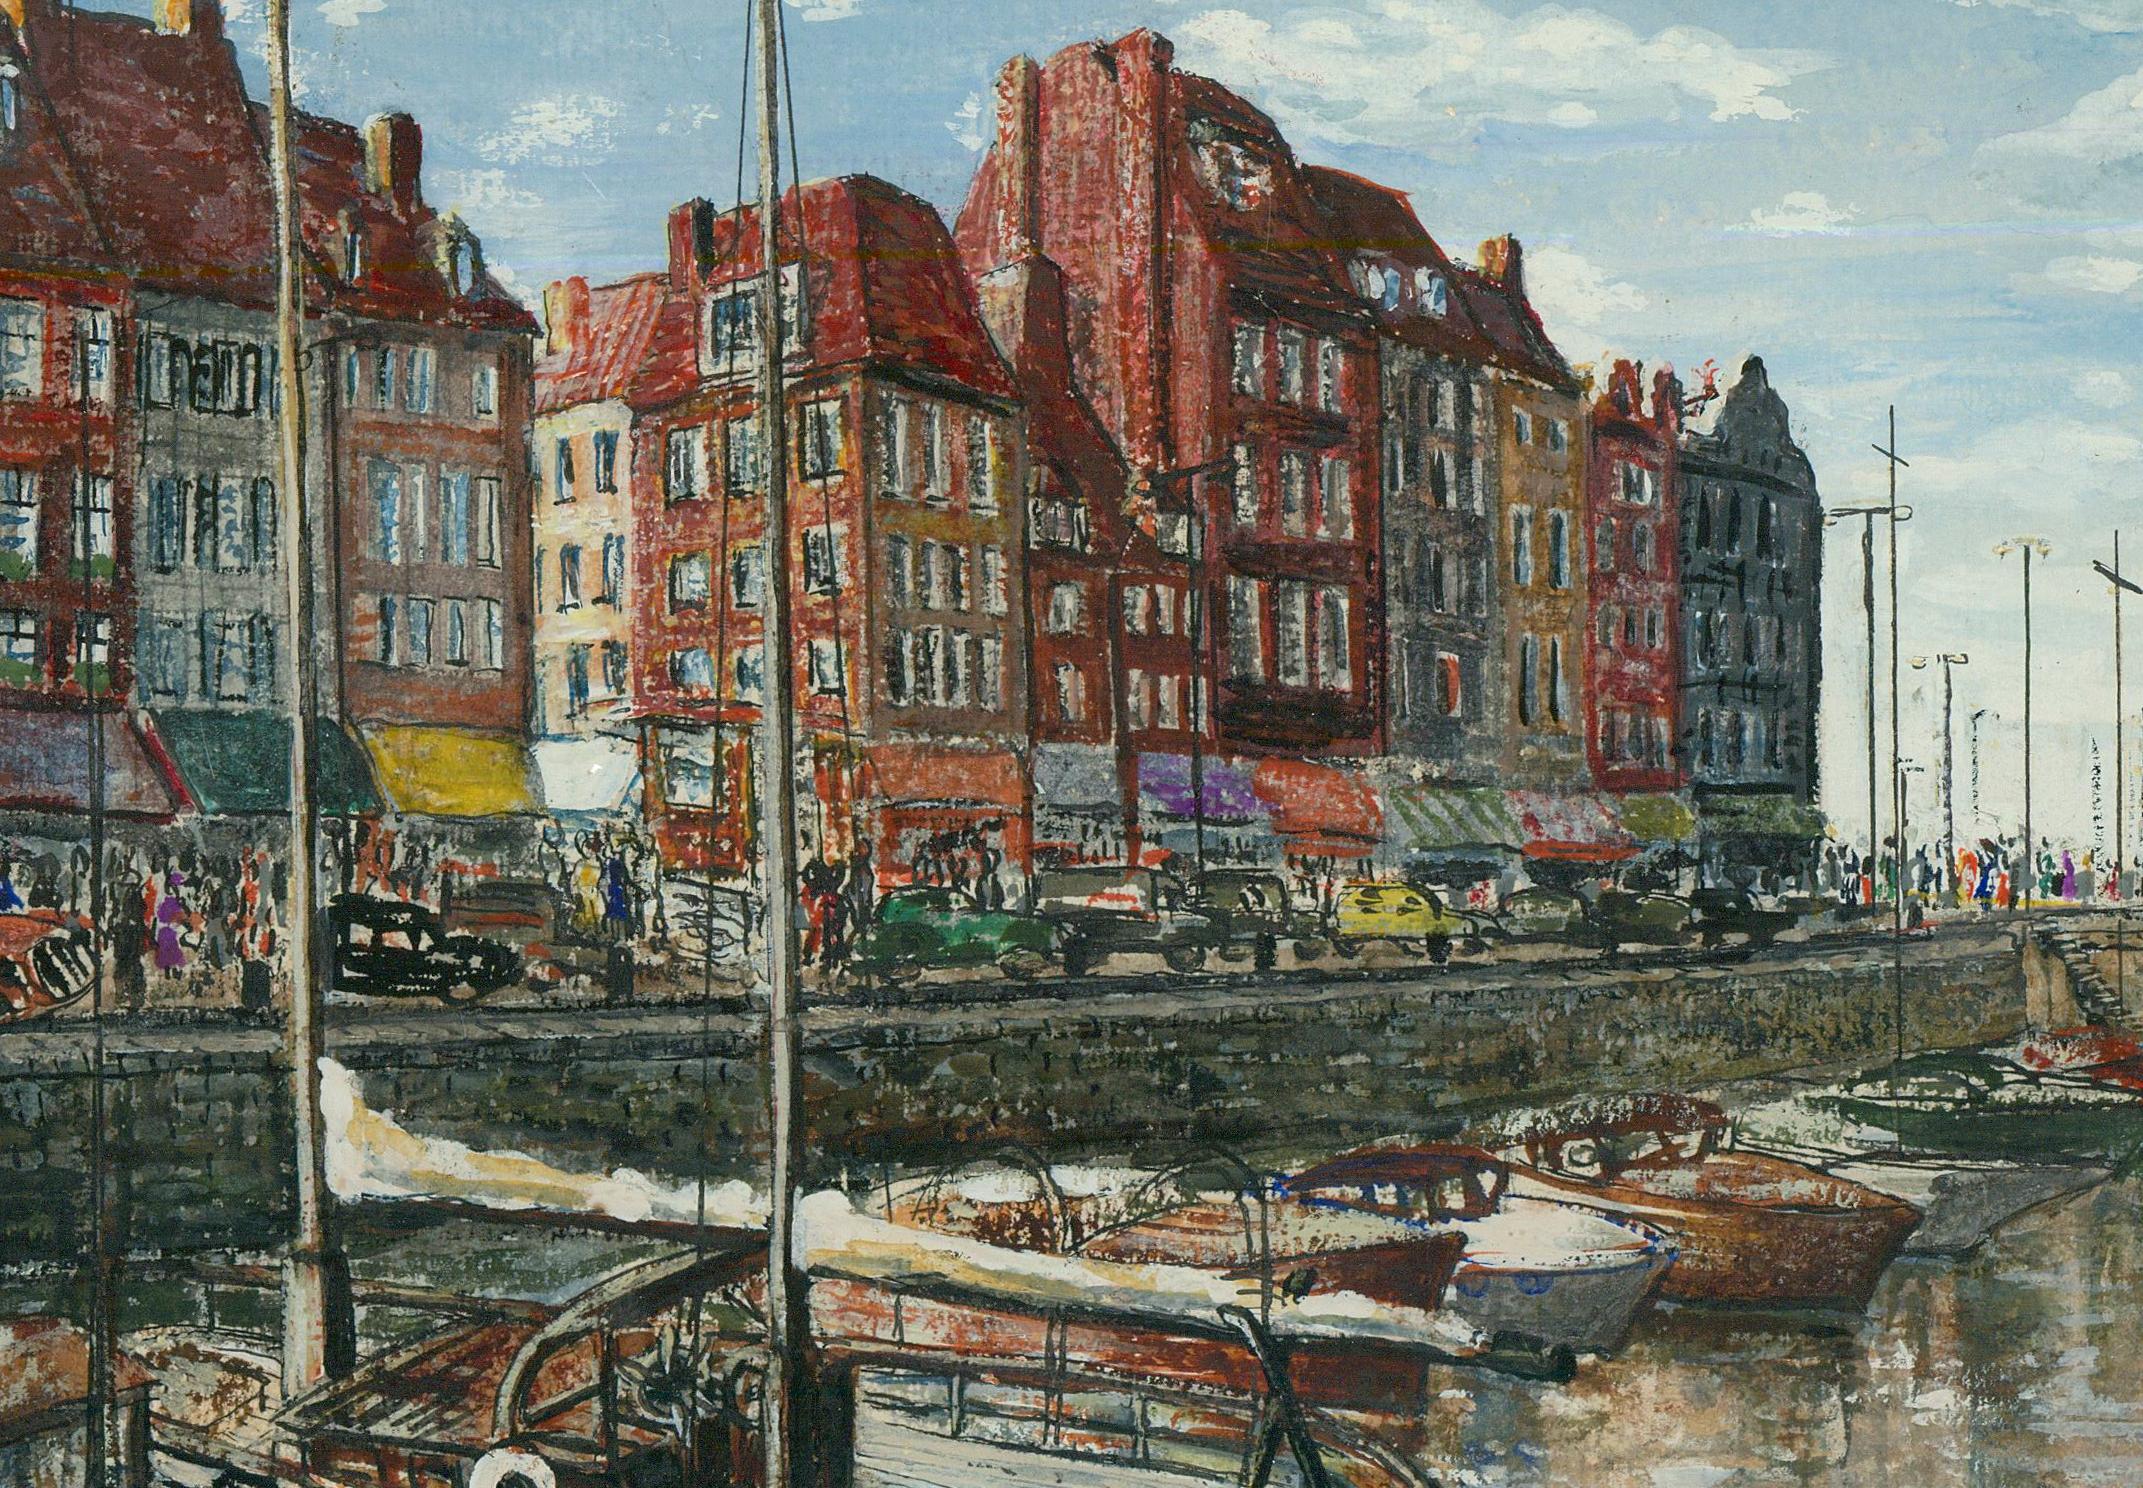 Die Künstlerin Sonia Poliakov aus dem 20. Jahrhundert hat den Hafen von Ostende in einem lebendigen Medienmix dargestellt. Die Komposition ist wunderschön und gut proportioniert und zeigt einen Großteil der beeindruckenden Architektur des Hafens,